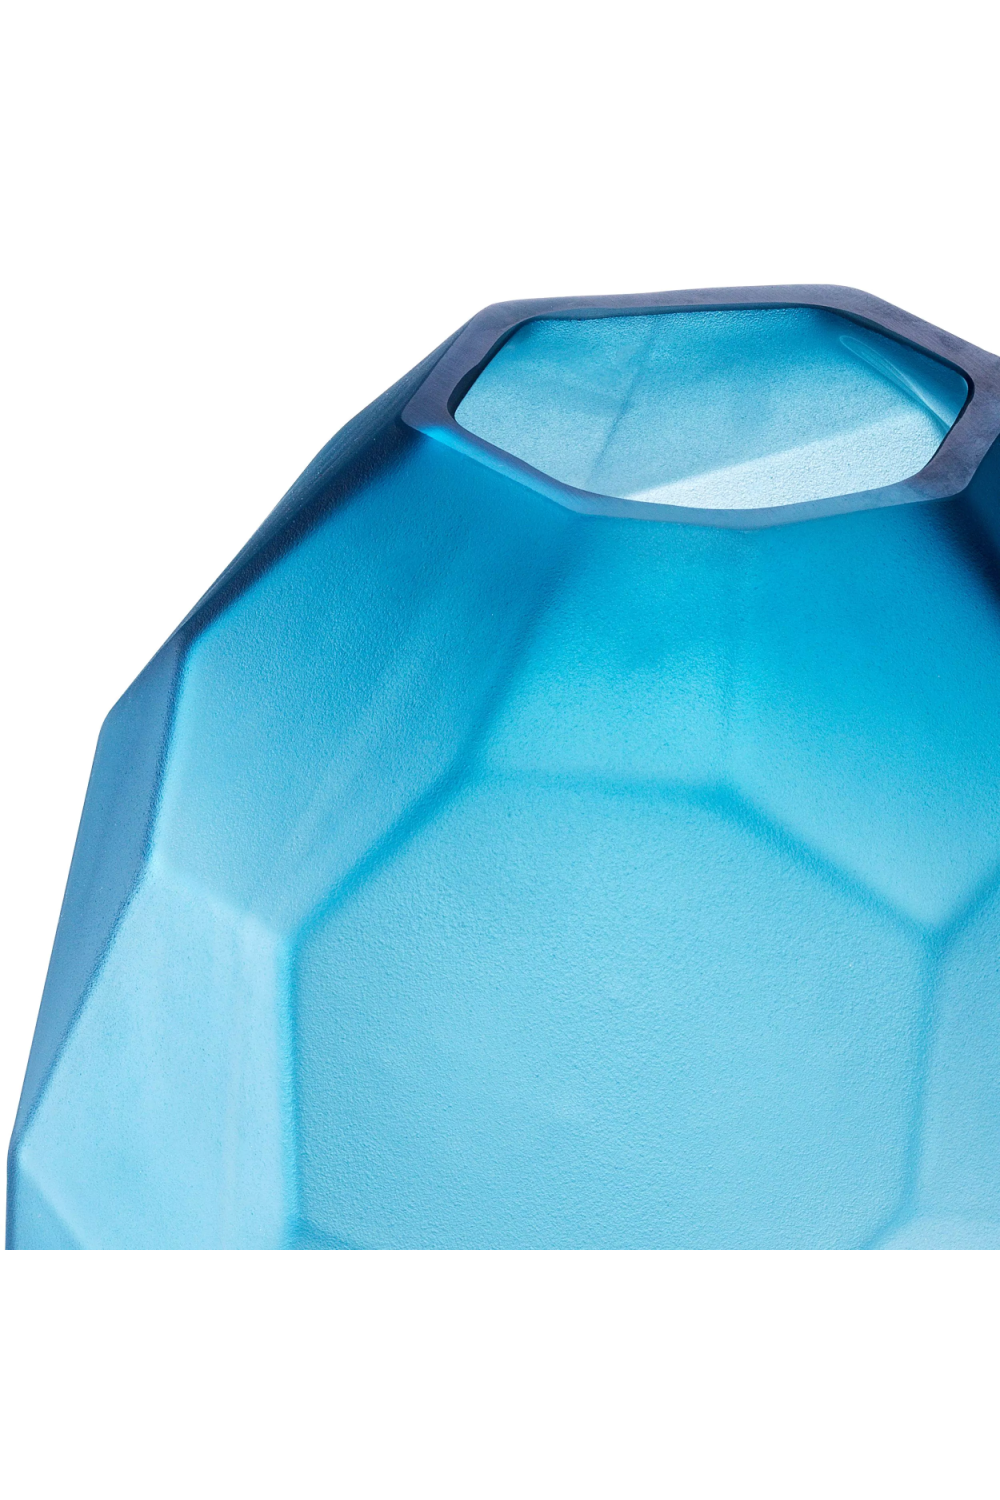 Gorgeous Blue Hand Blown Glass Vase - Eichholtz Fly L | OROA.com